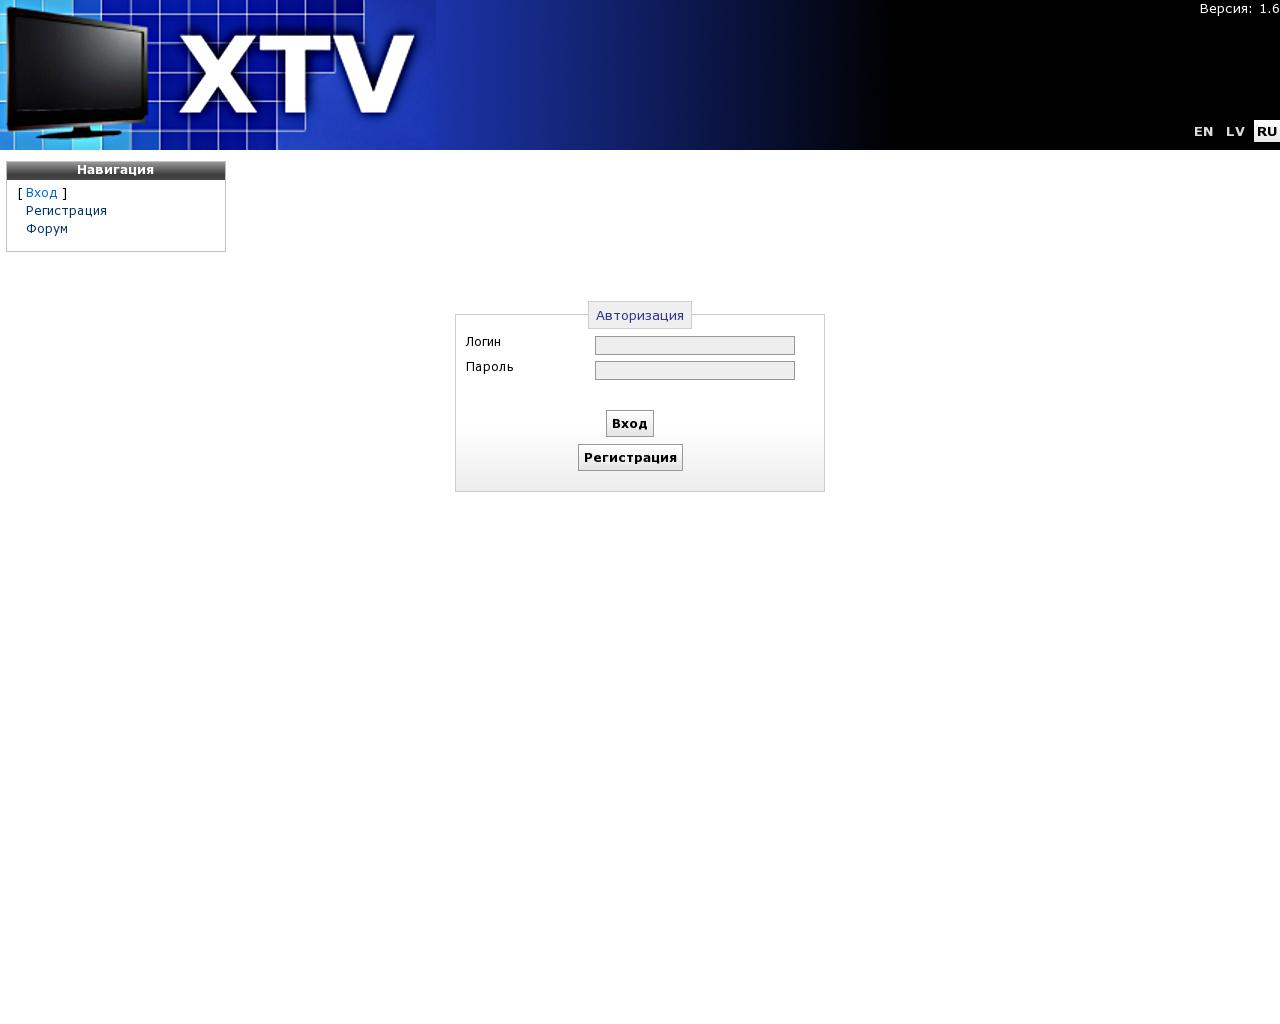 Изображение сайта xtv2.ru в разрешении 1280x1024